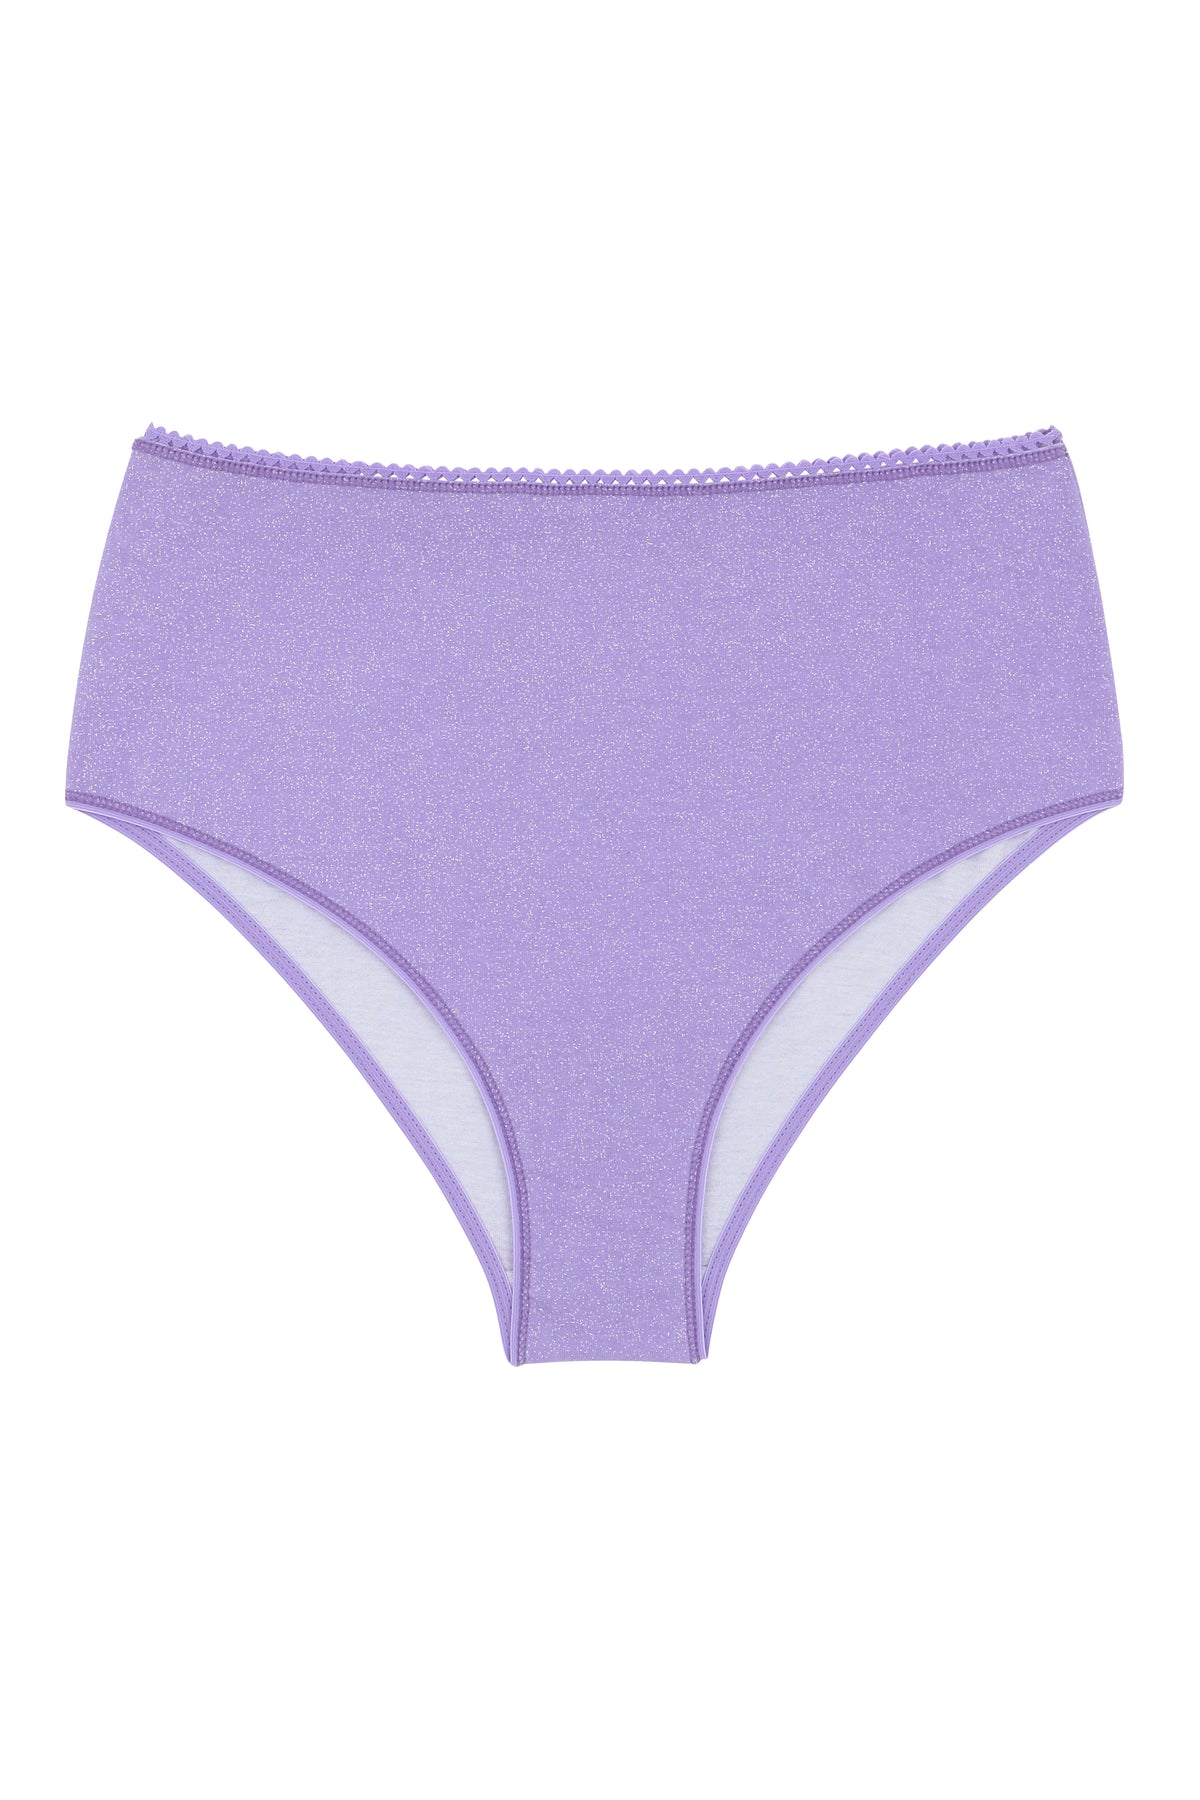 Culotte Taille Haute Coton BIO - Paillettes Violet